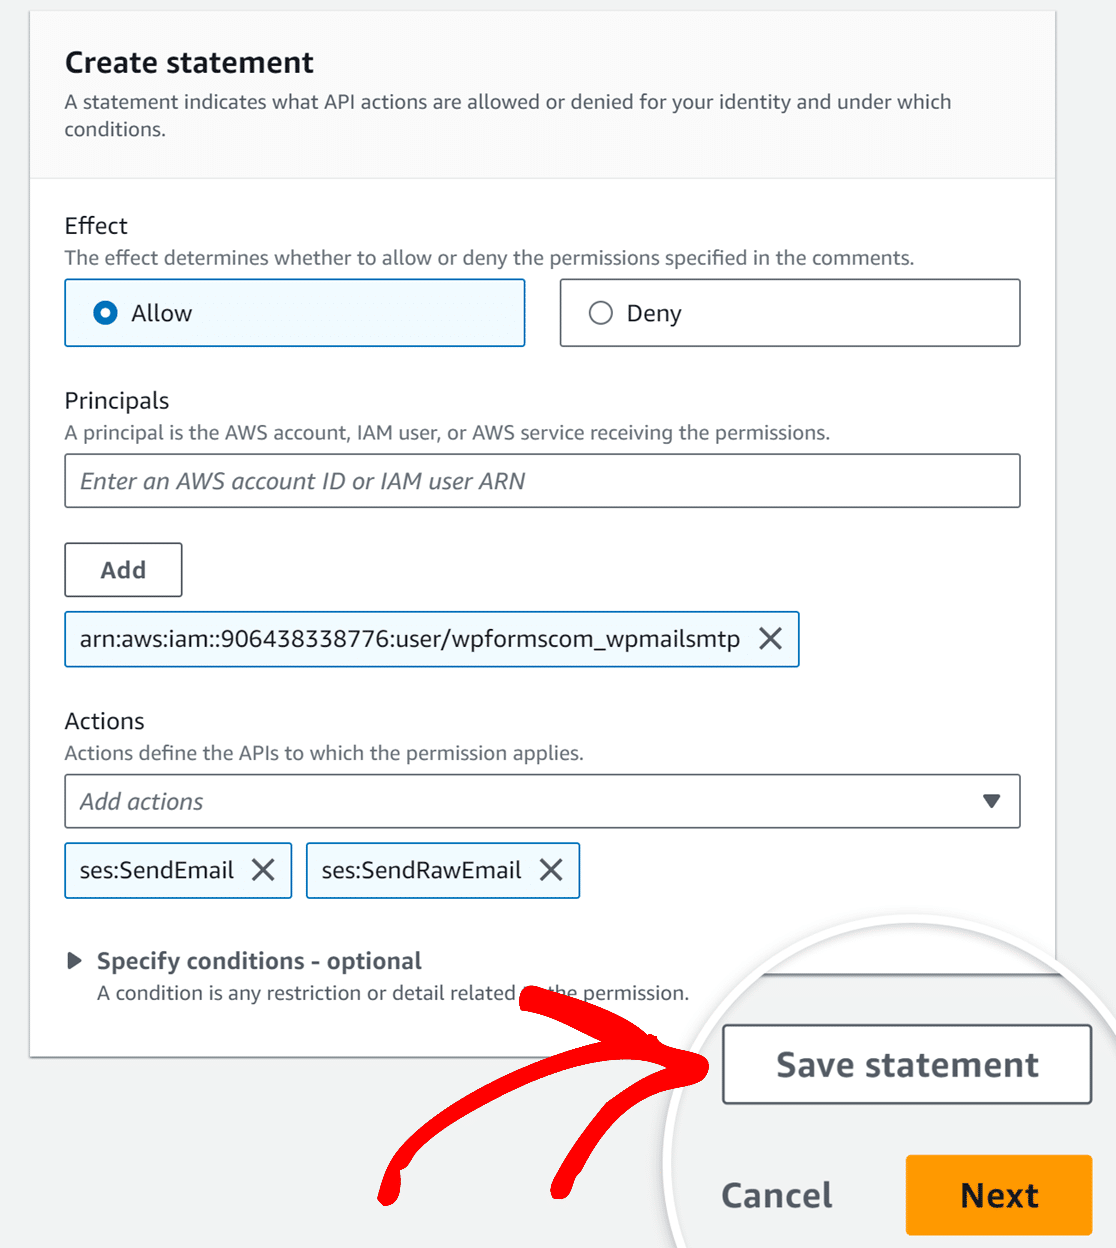 Save statement button